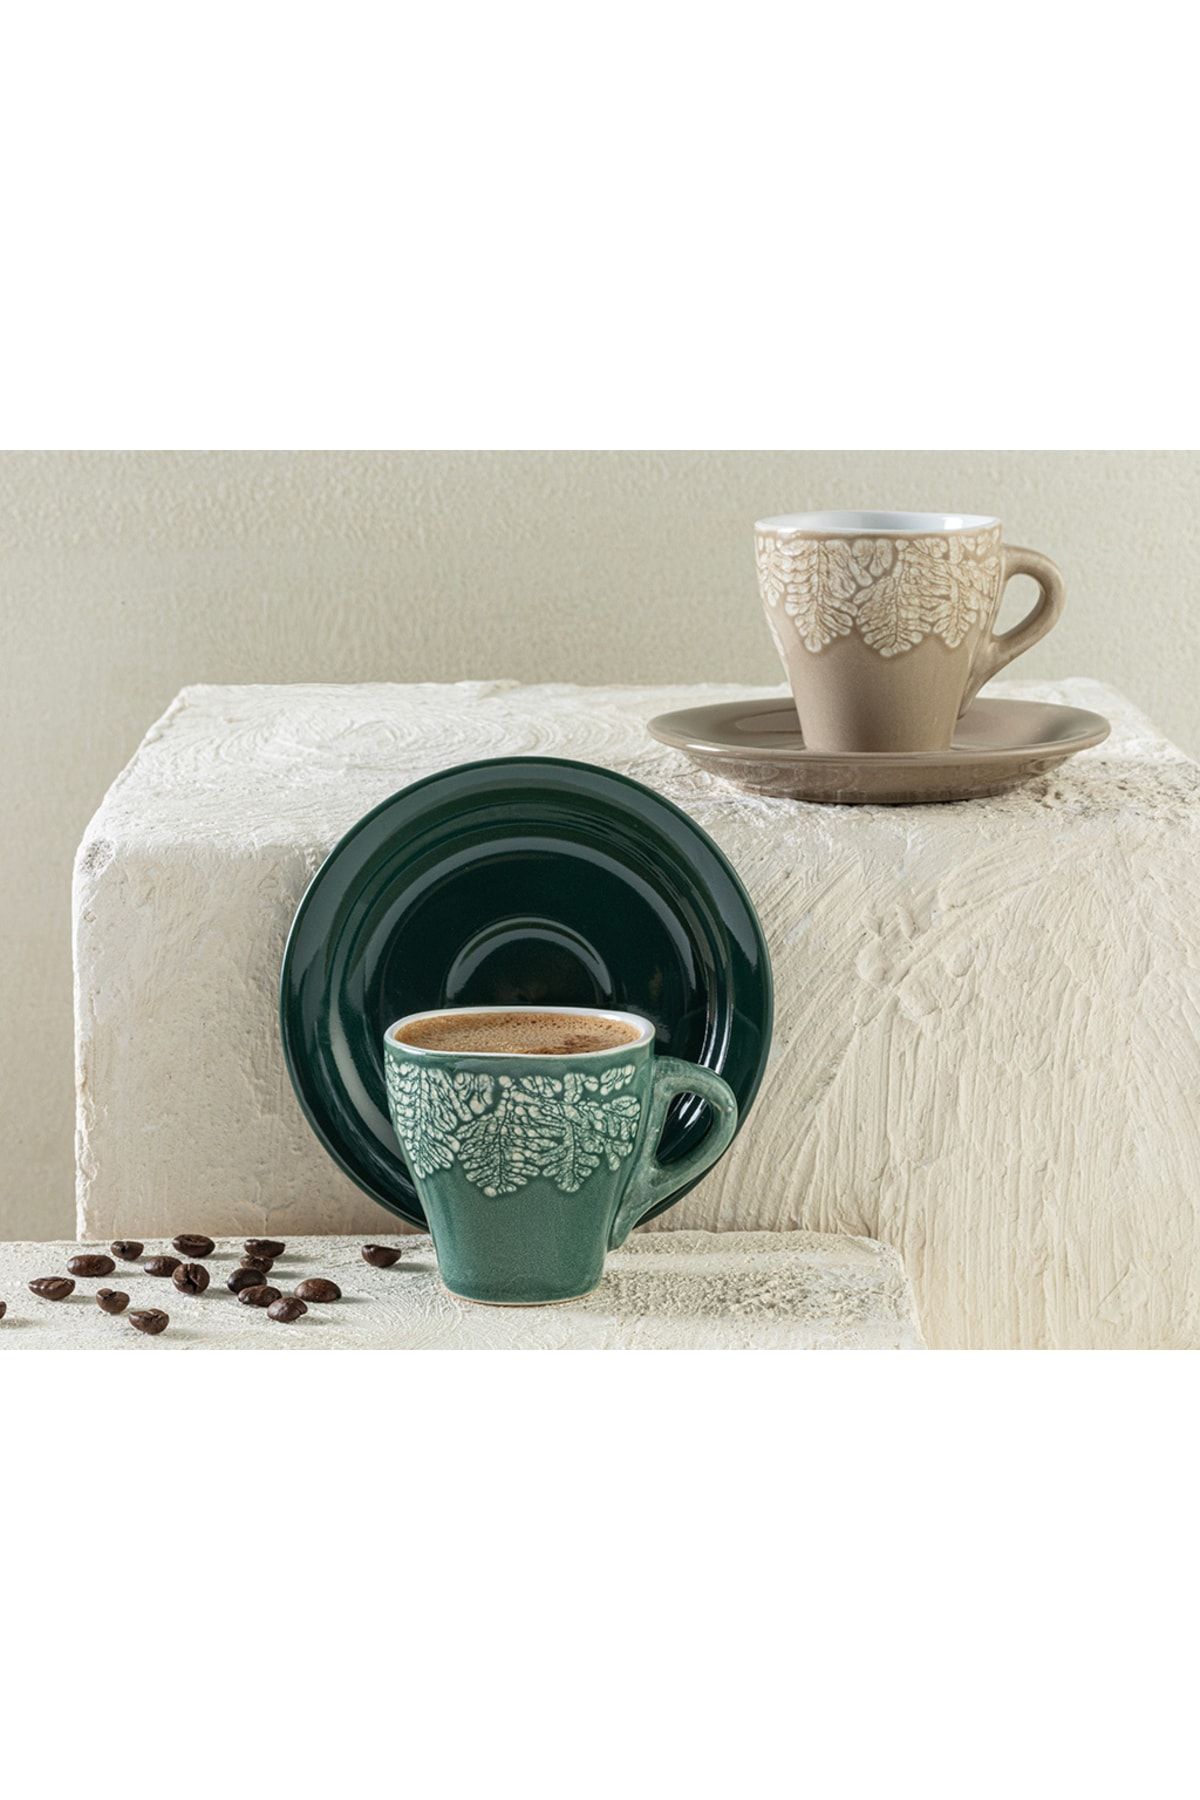 English Home Rila Stoneware 4 Parça 2 Kişilik Kahve Fıncan Takımı 100 ml Bej - Yeşil